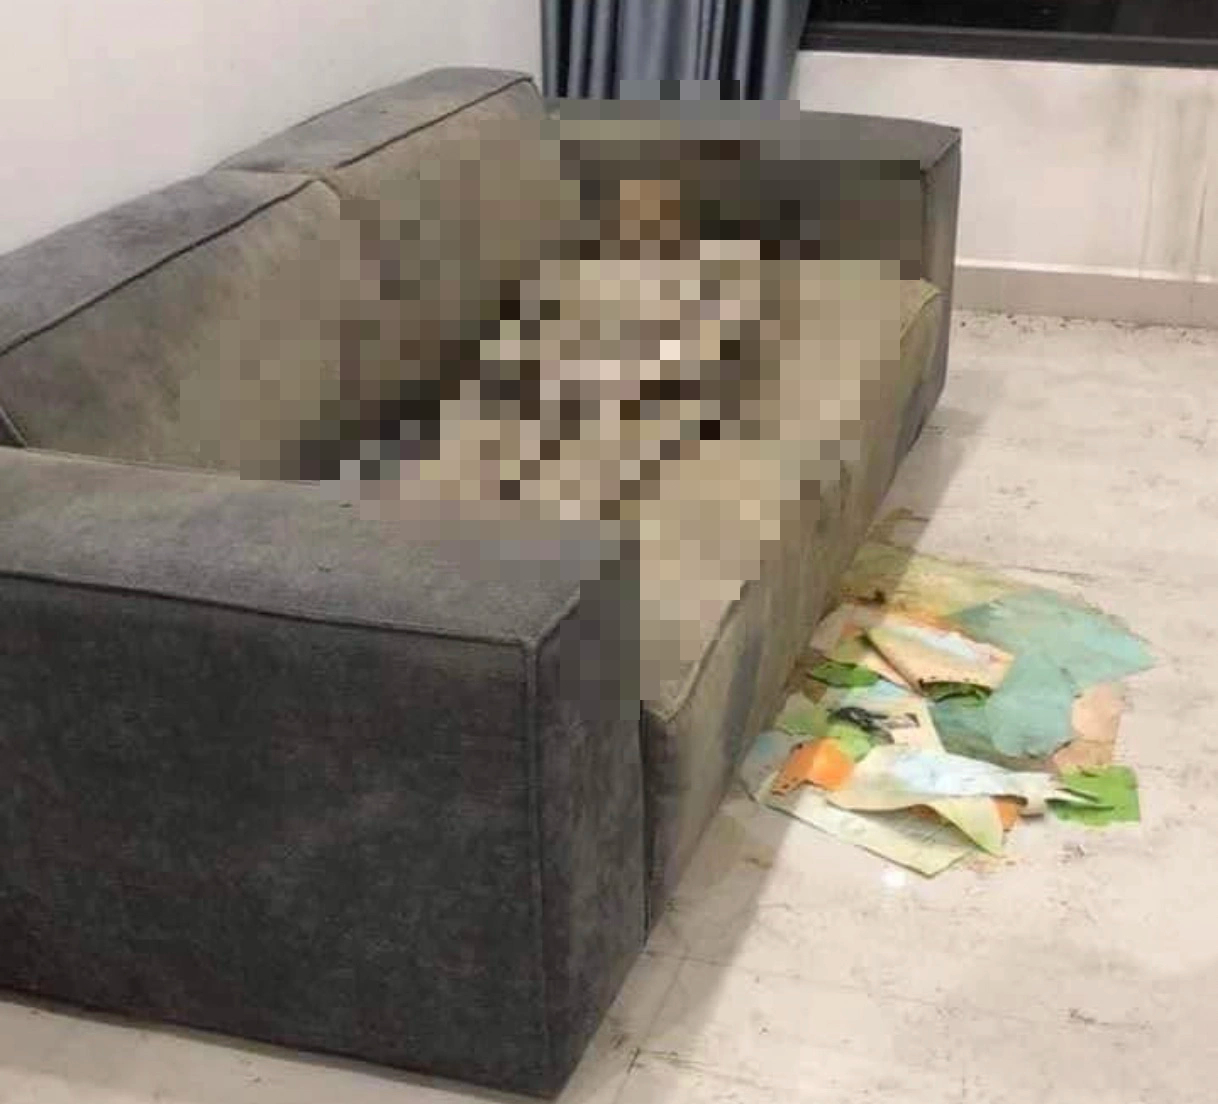 Thi thể nữ giới 'chết khô' trên sofa trong căn hộ chung cư